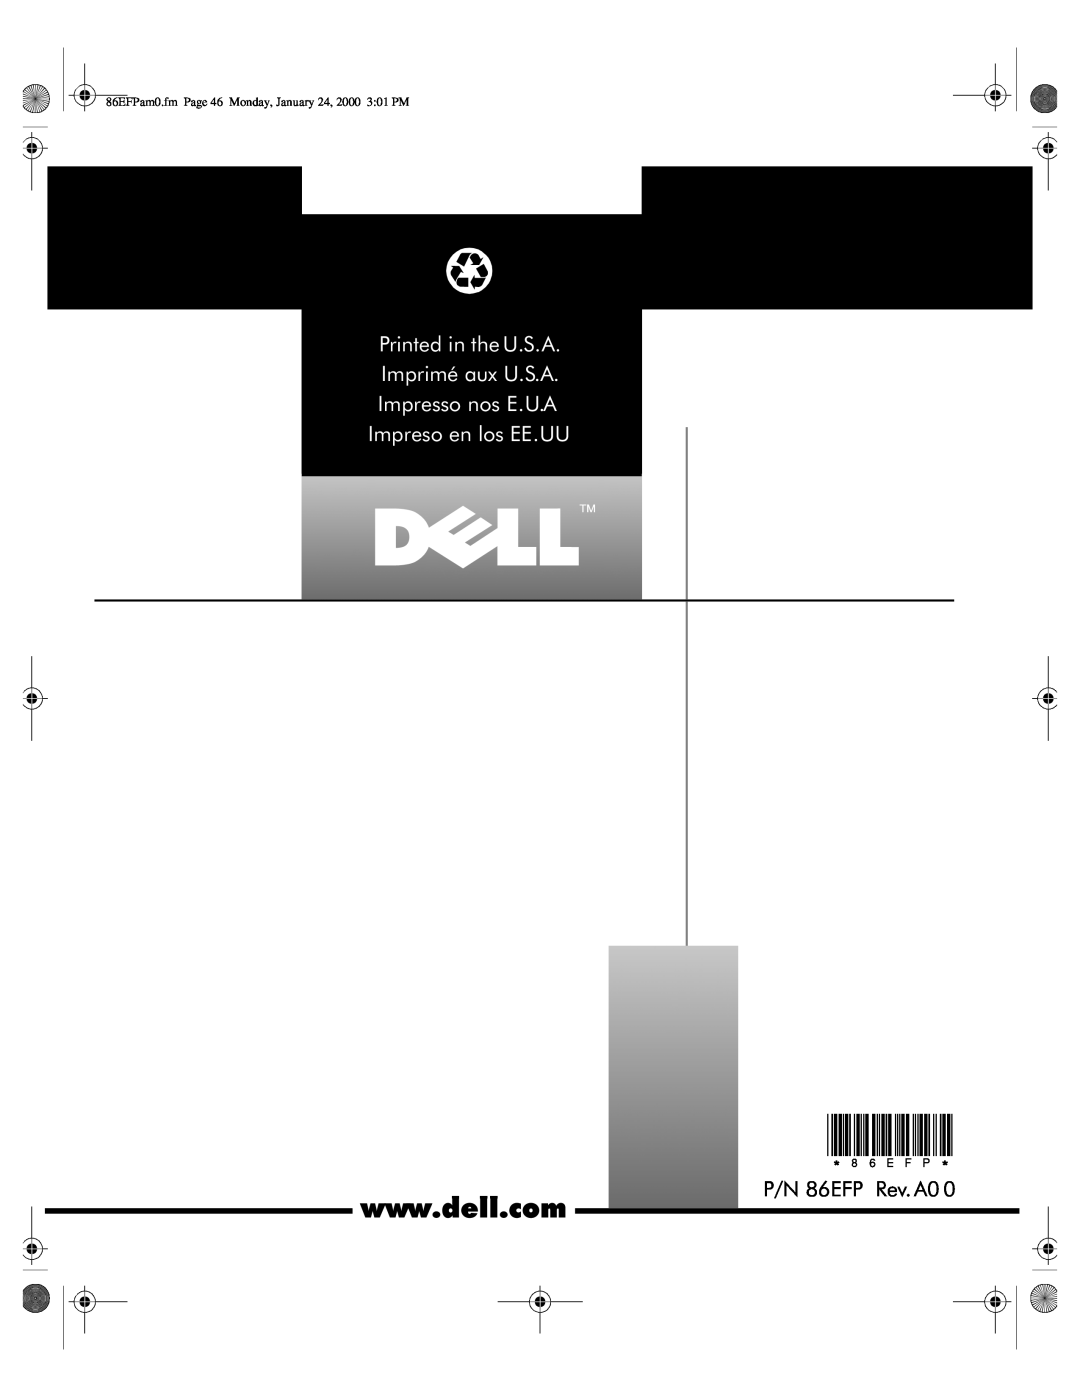 Dell PPX manual P/N 86EFP Rev. A0, Printed in the U.S.A Imprimé aux U.S.A Impresso nos E.U.A, Impreso en los EE.UU 